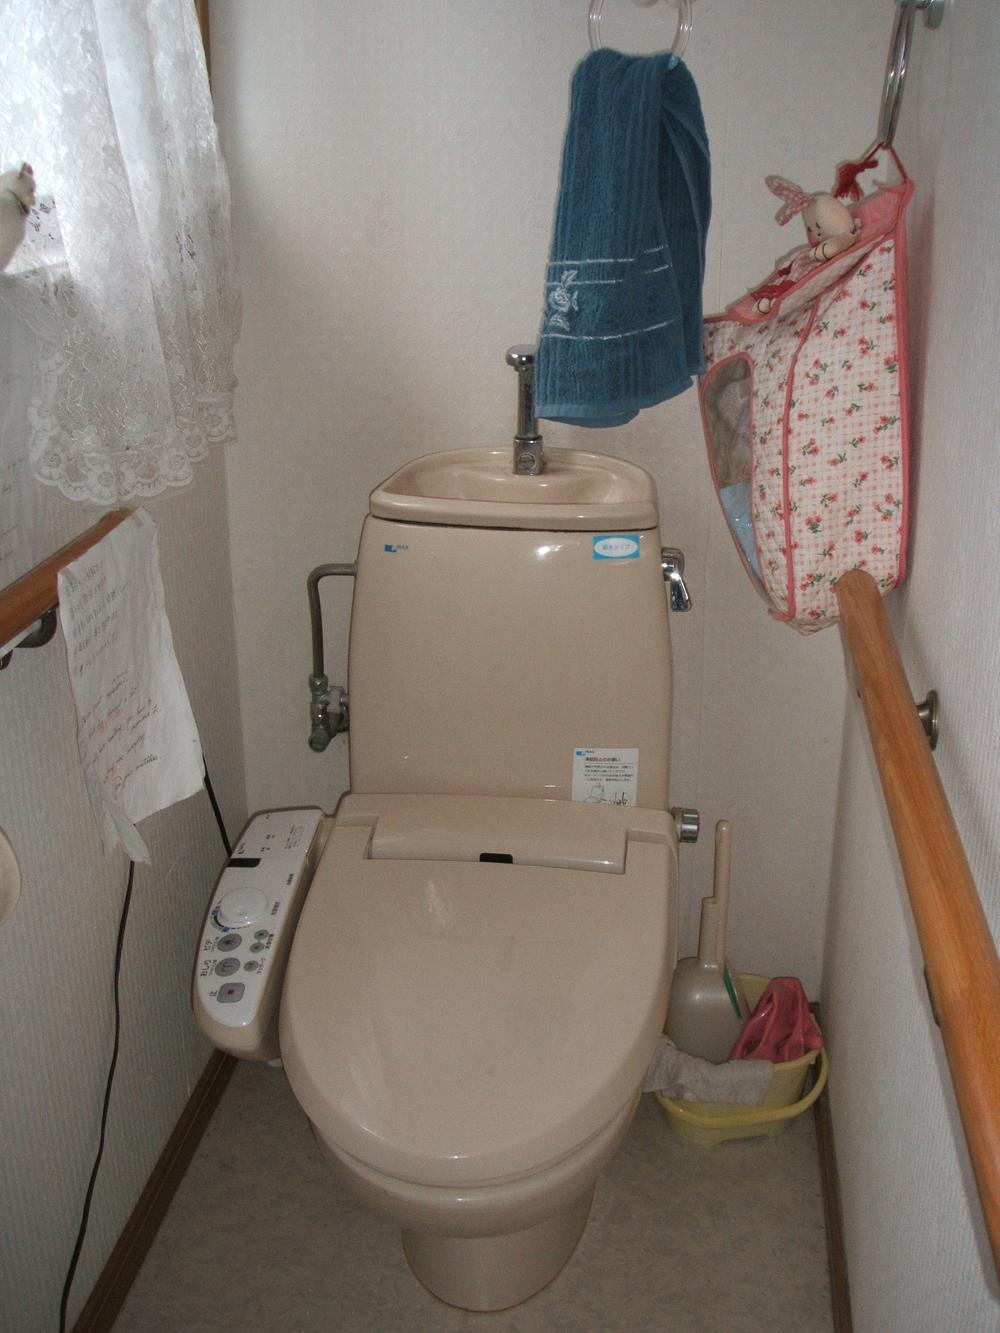 Toilet. Indoor (12 May 2013) Shooting 1st floor